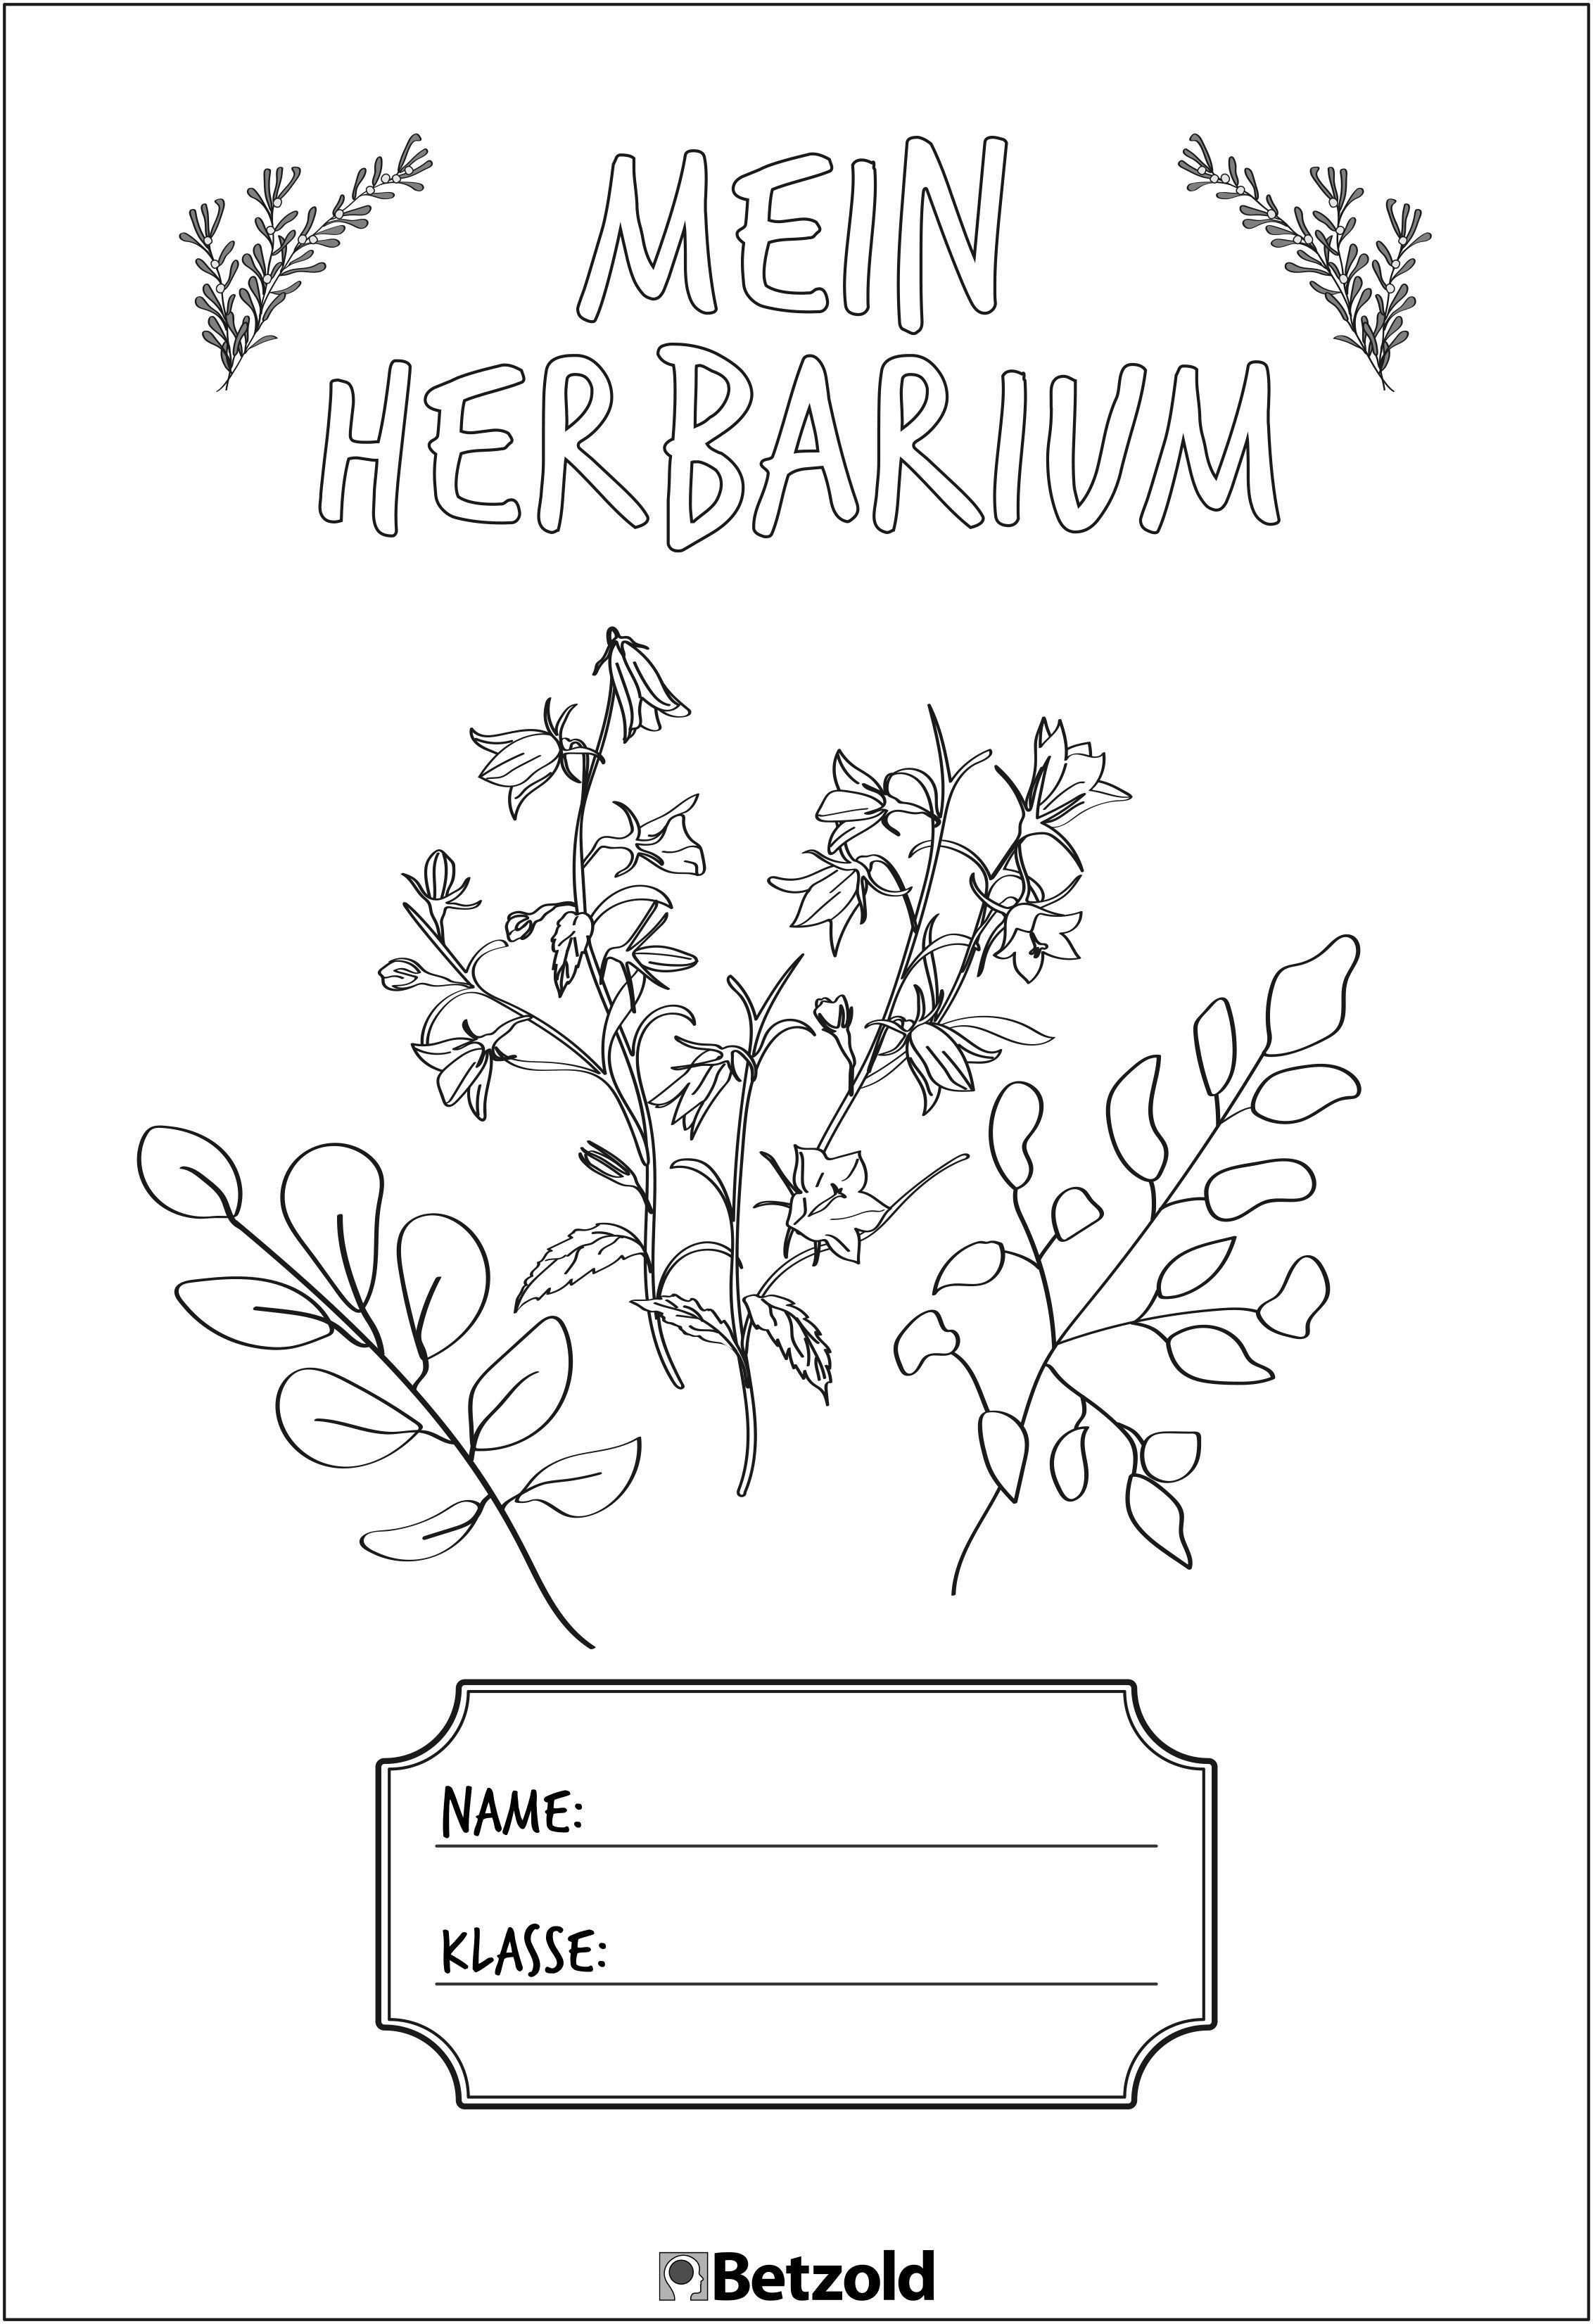 Herbarium Deckblatt Vorlage